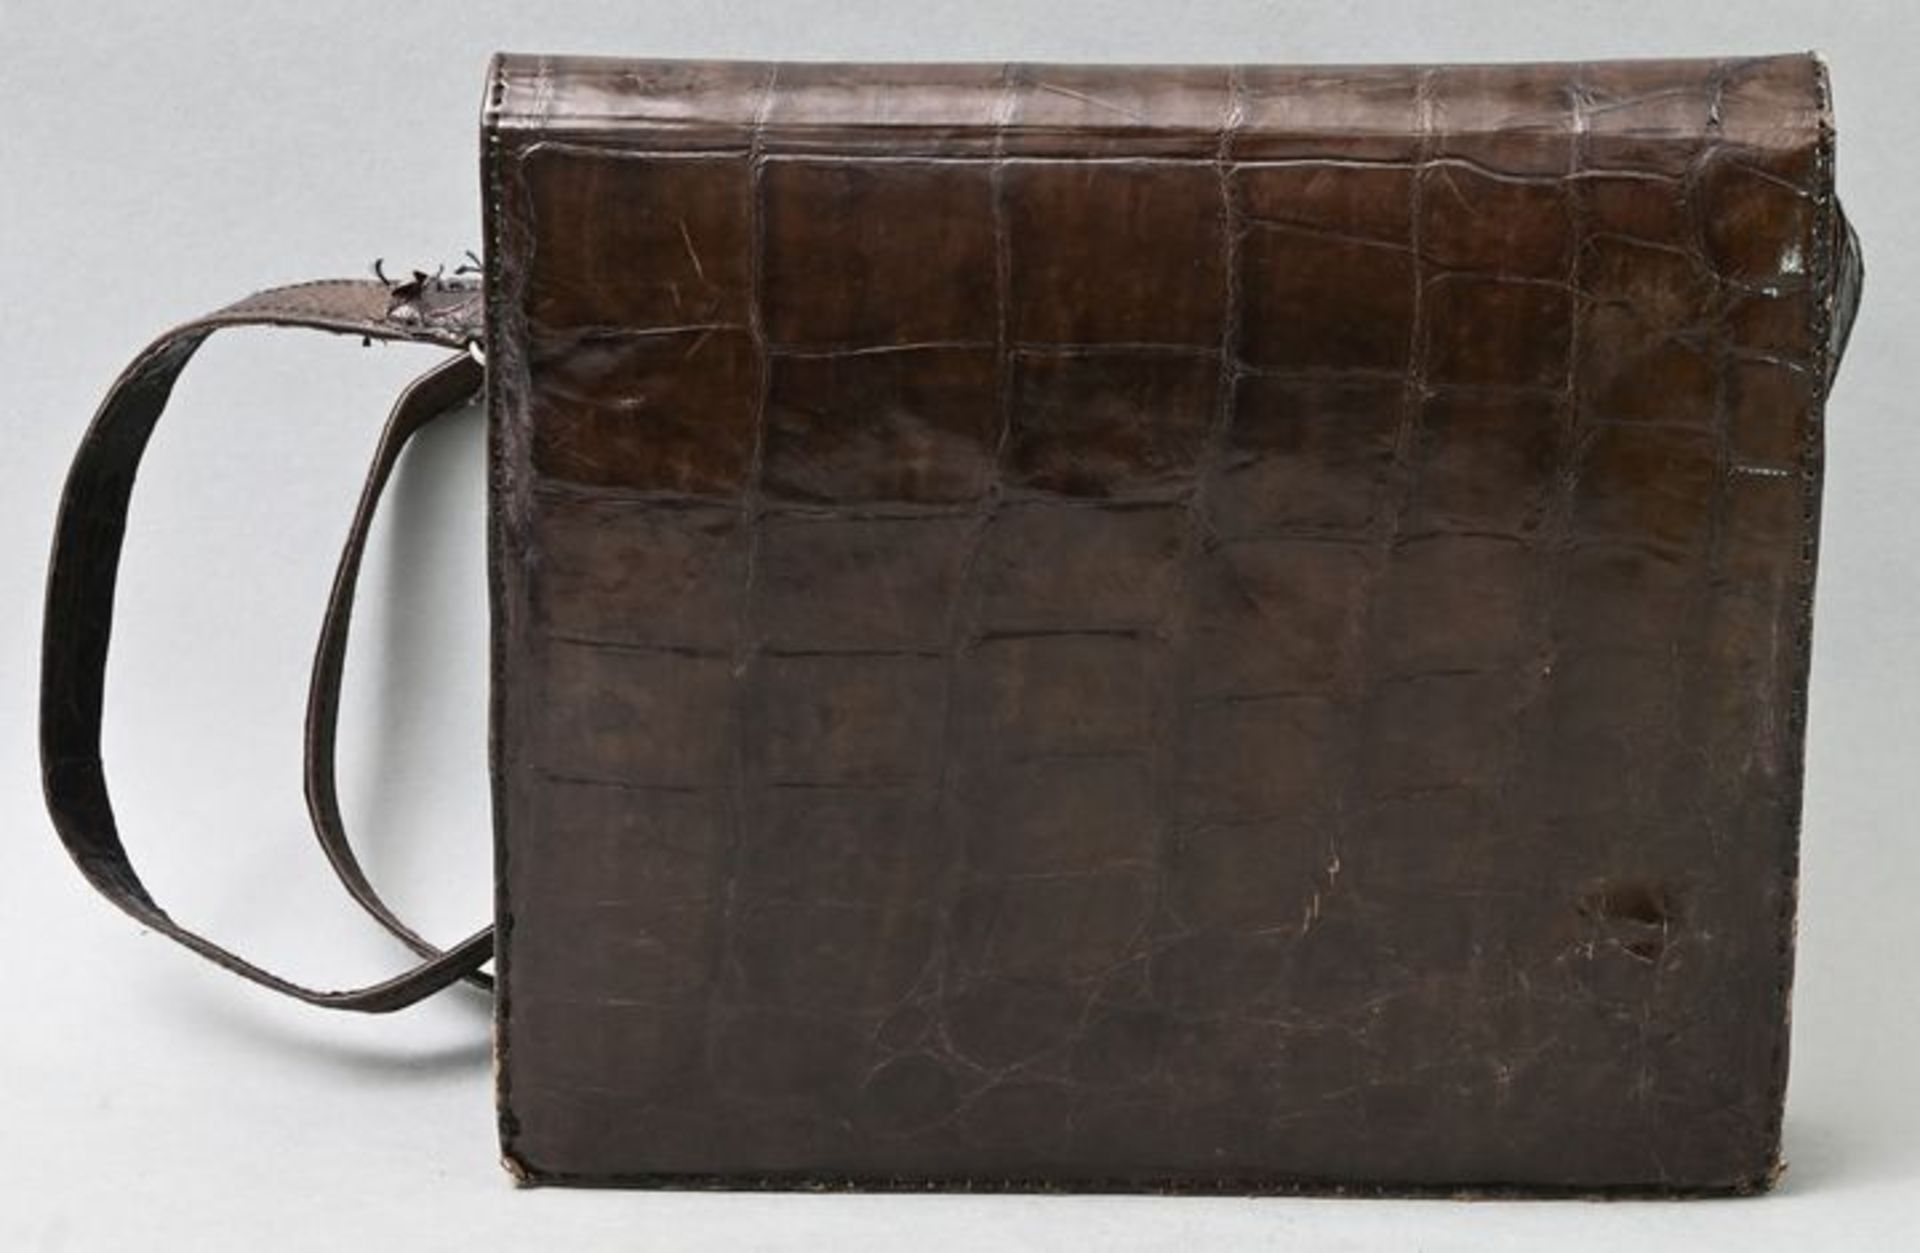 Damenhandtasche, dunkelbraunes Kroko / Handbag, darkbrown croco - Image 3 of 3